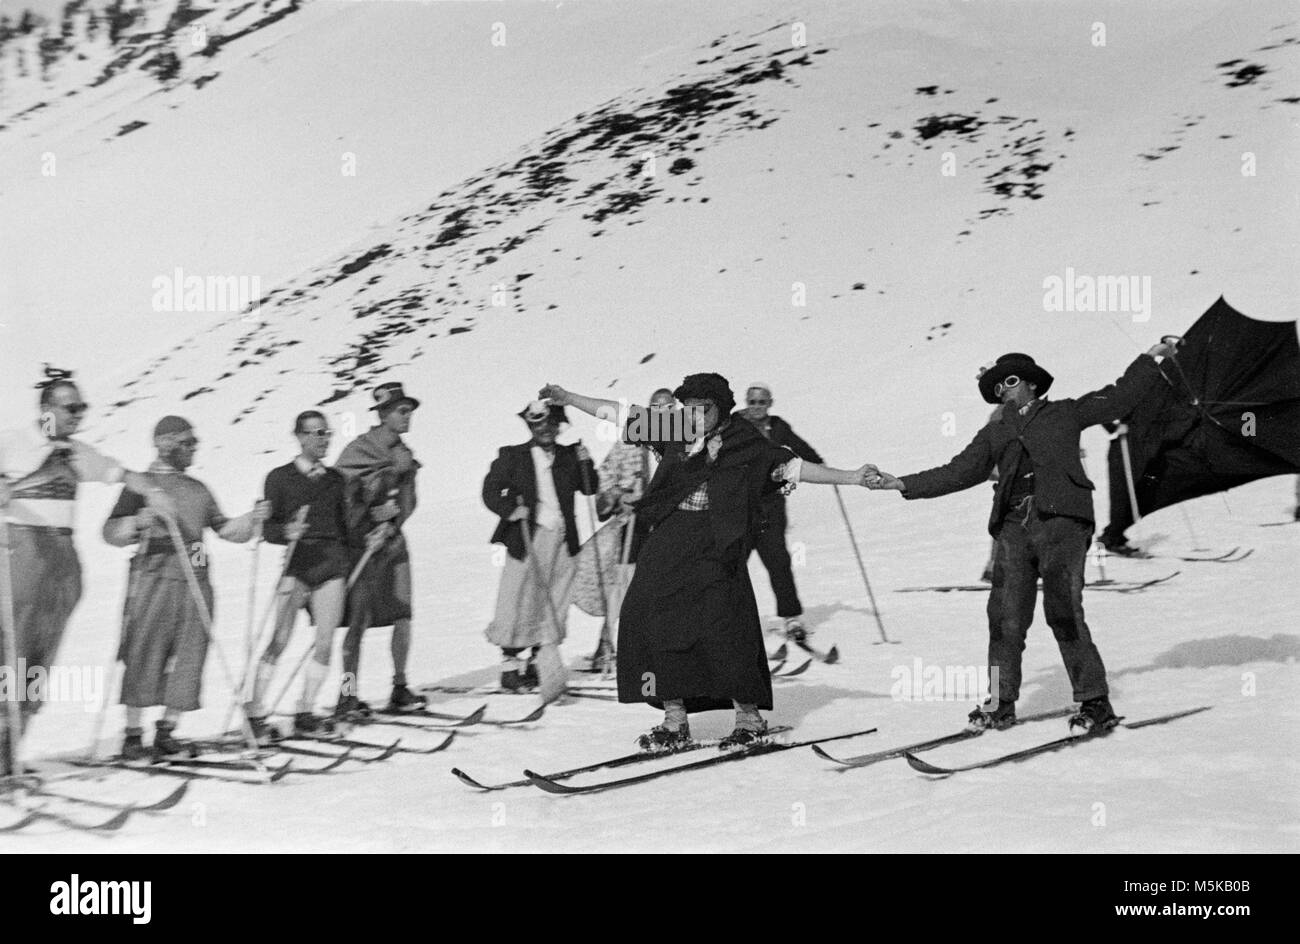 Le ski en Suisse en 1937. Un groupe de skieurs en robe de soirée sur les pistes de ski. Banque D'Images